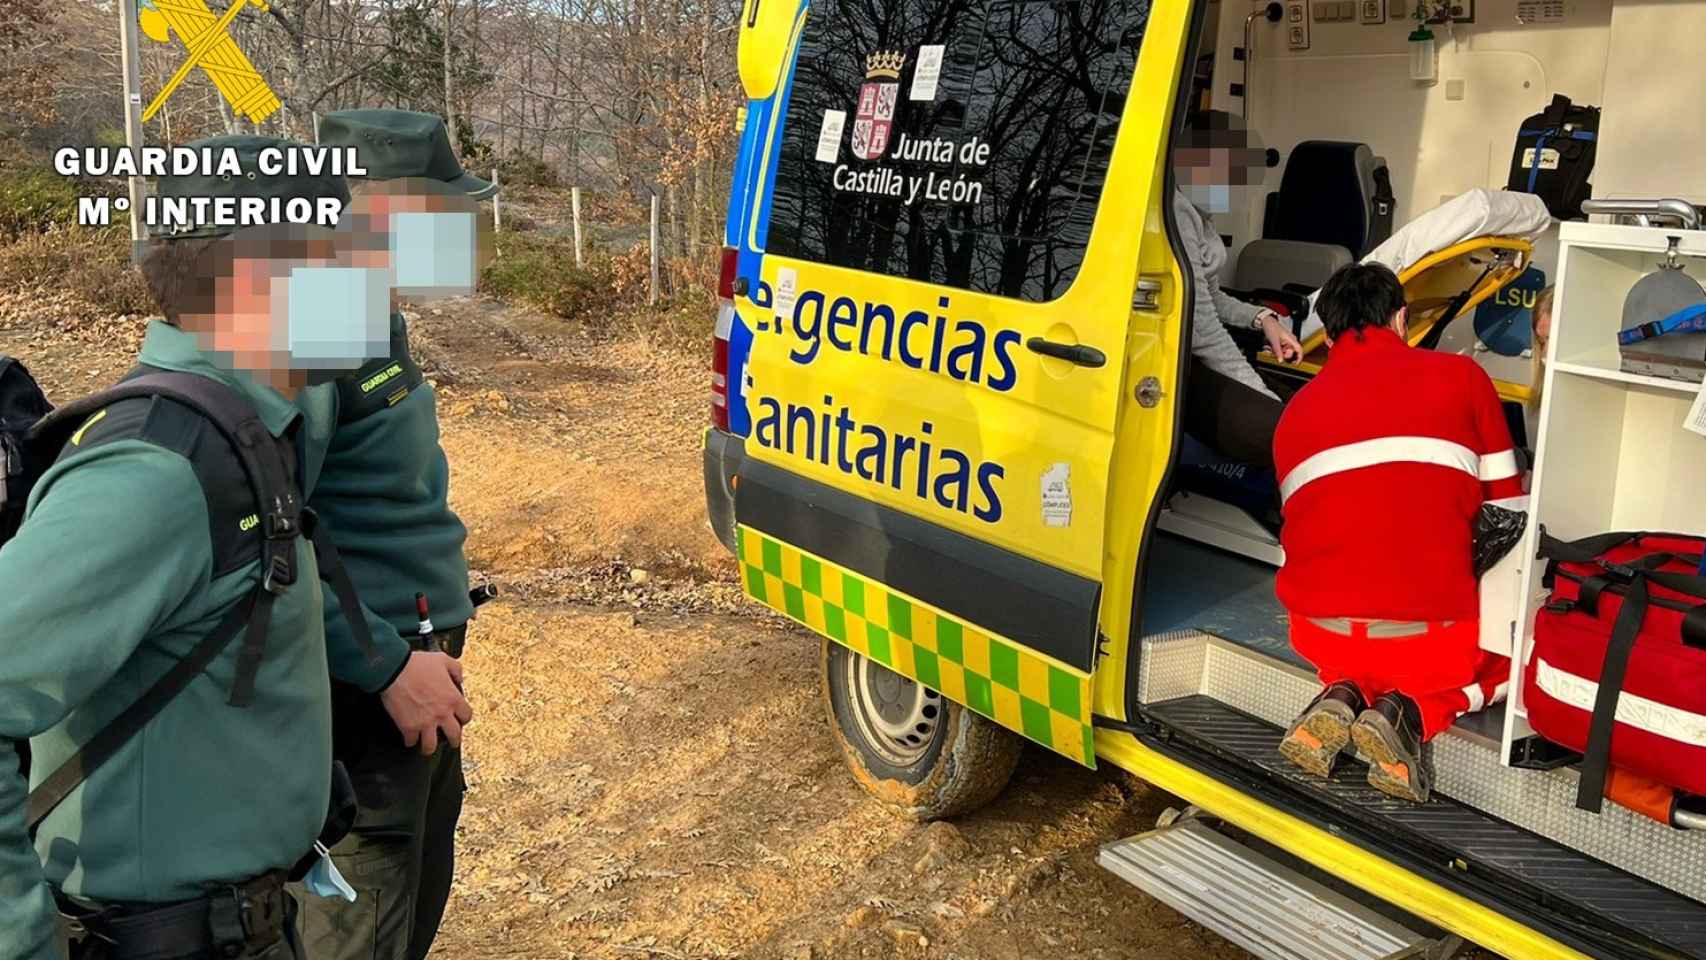 Imagen del rescate facilitada por la Guardia Civil de Burgos